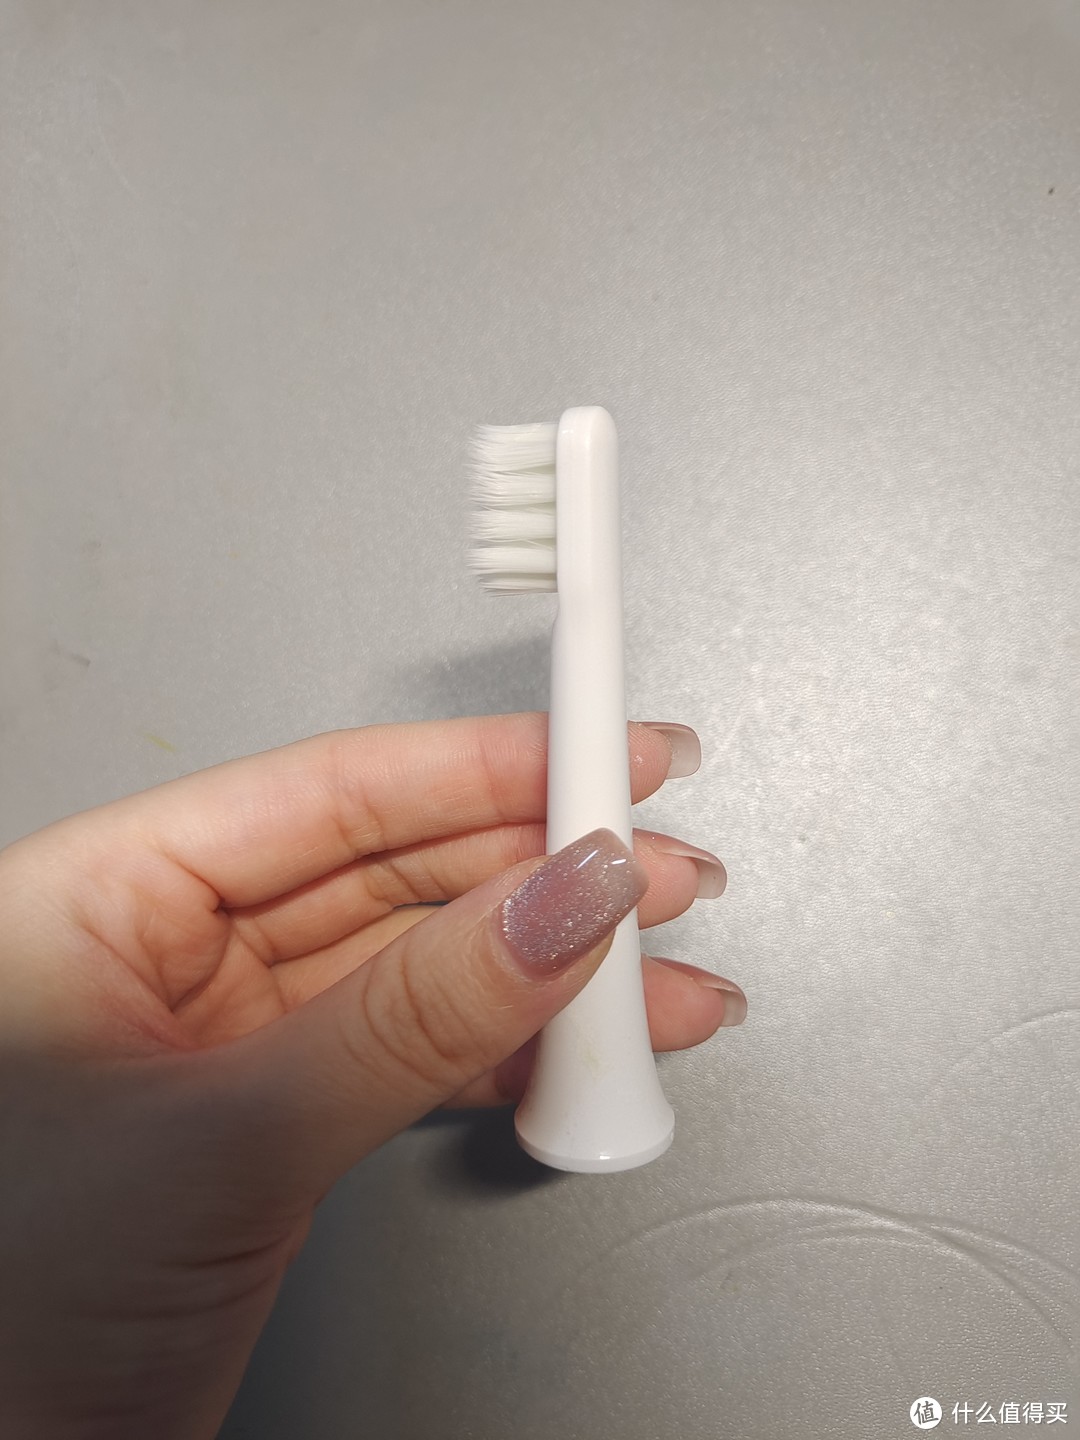 小米的电动牙刷头还算是蛮好用的